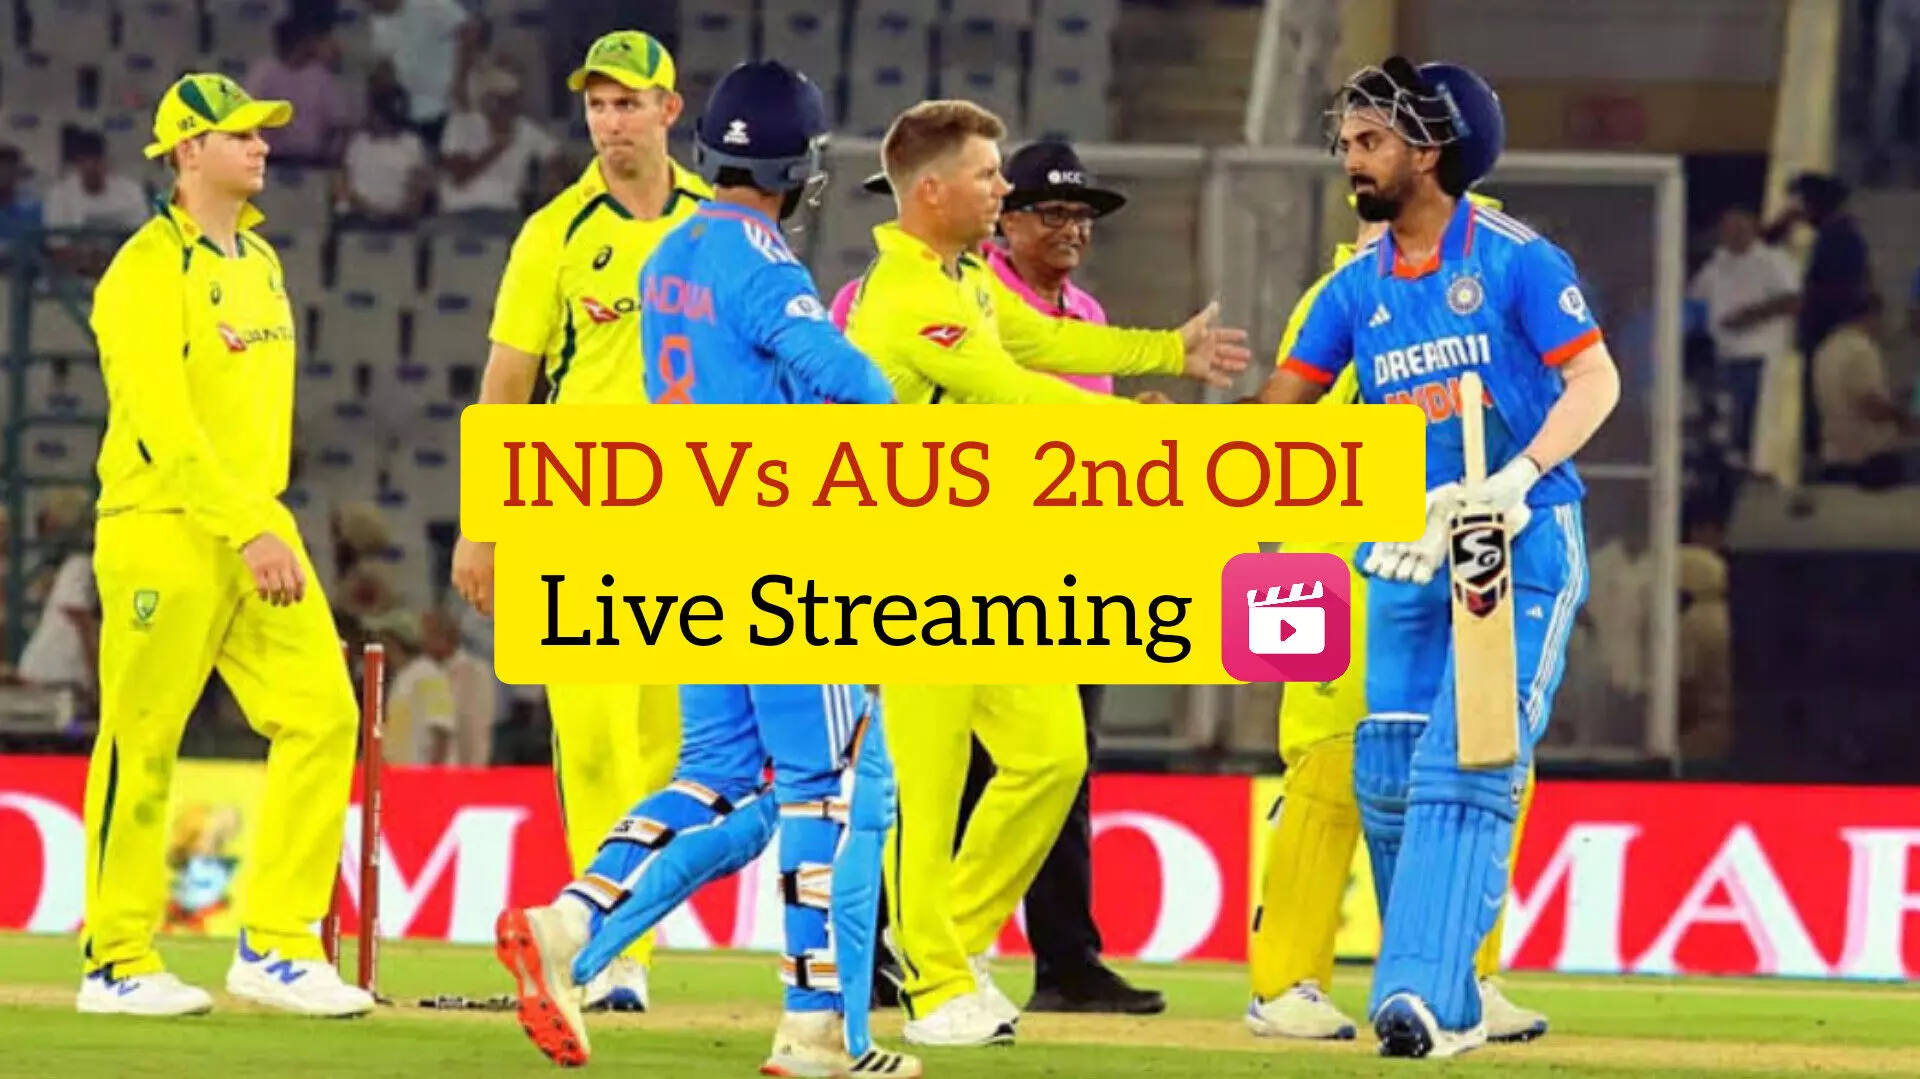 IND vs AUS ODI Live Streaming: होल्कर स्टेडियम पिच रिपोर्ट, लाइव स्ट्रीमिंग, यहां जानें सभी डिटेल्स...